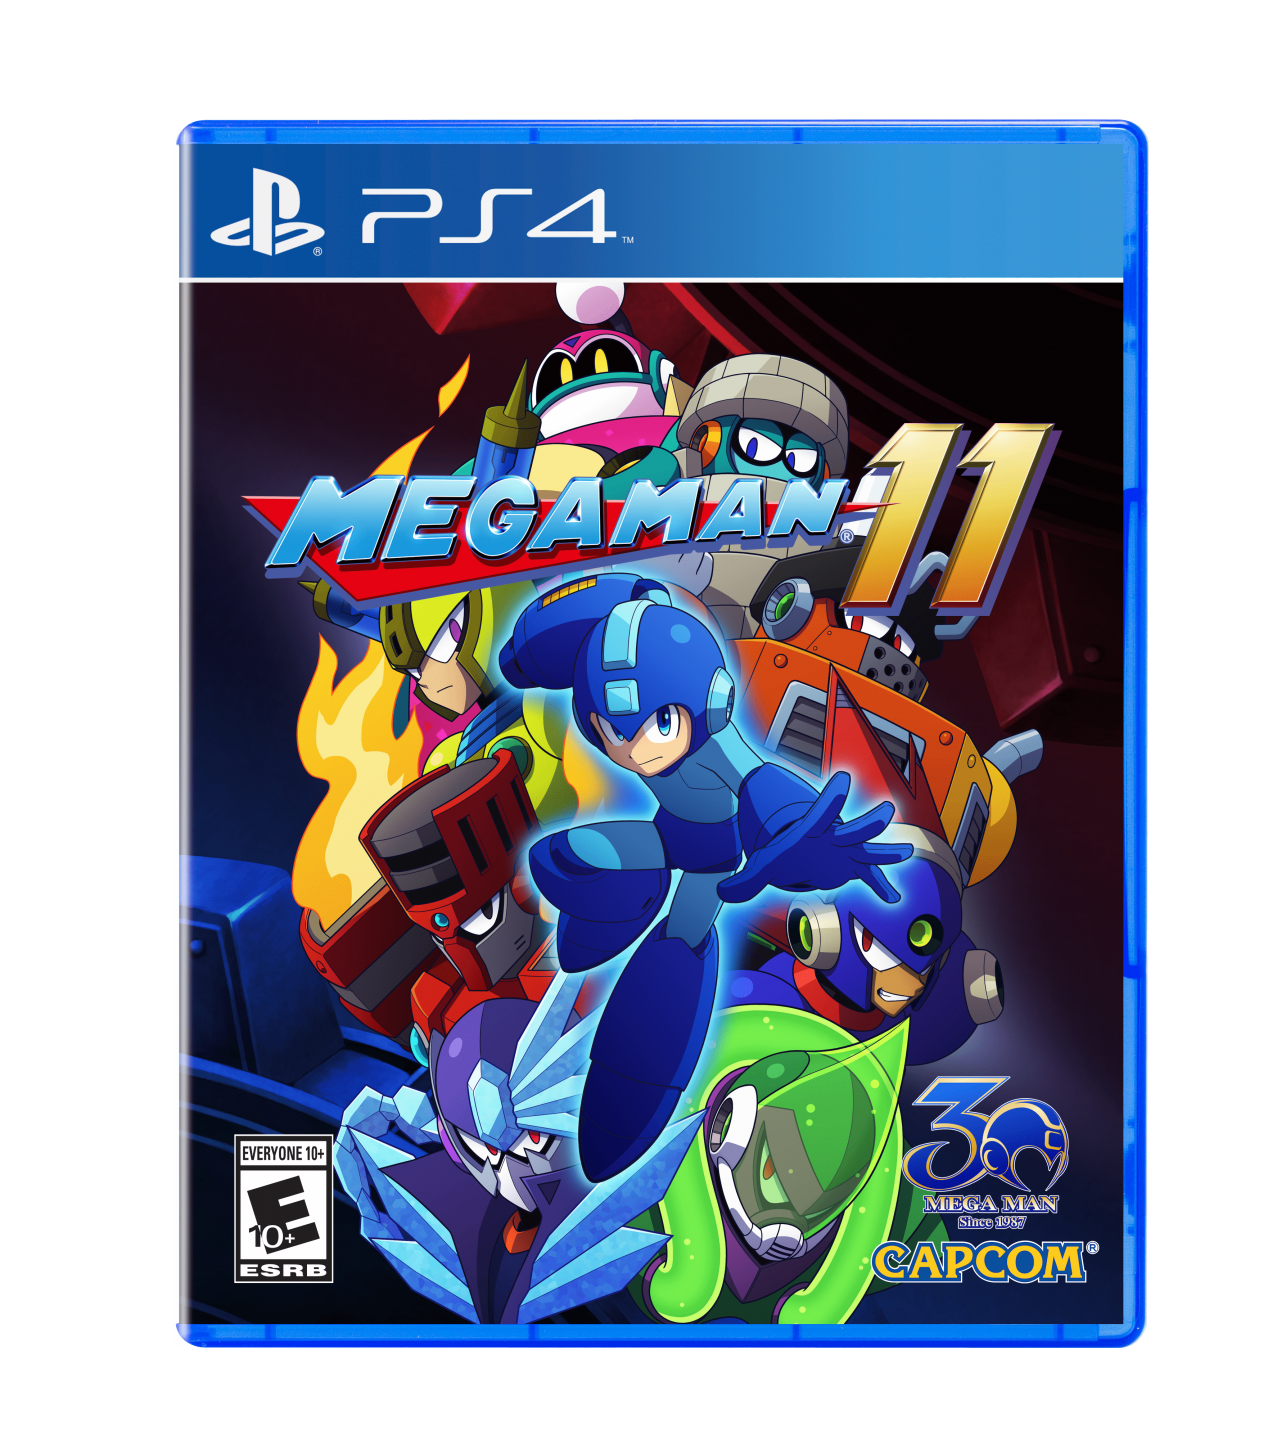 Mega Man 11 PlayStation 4 cover (Capcom)